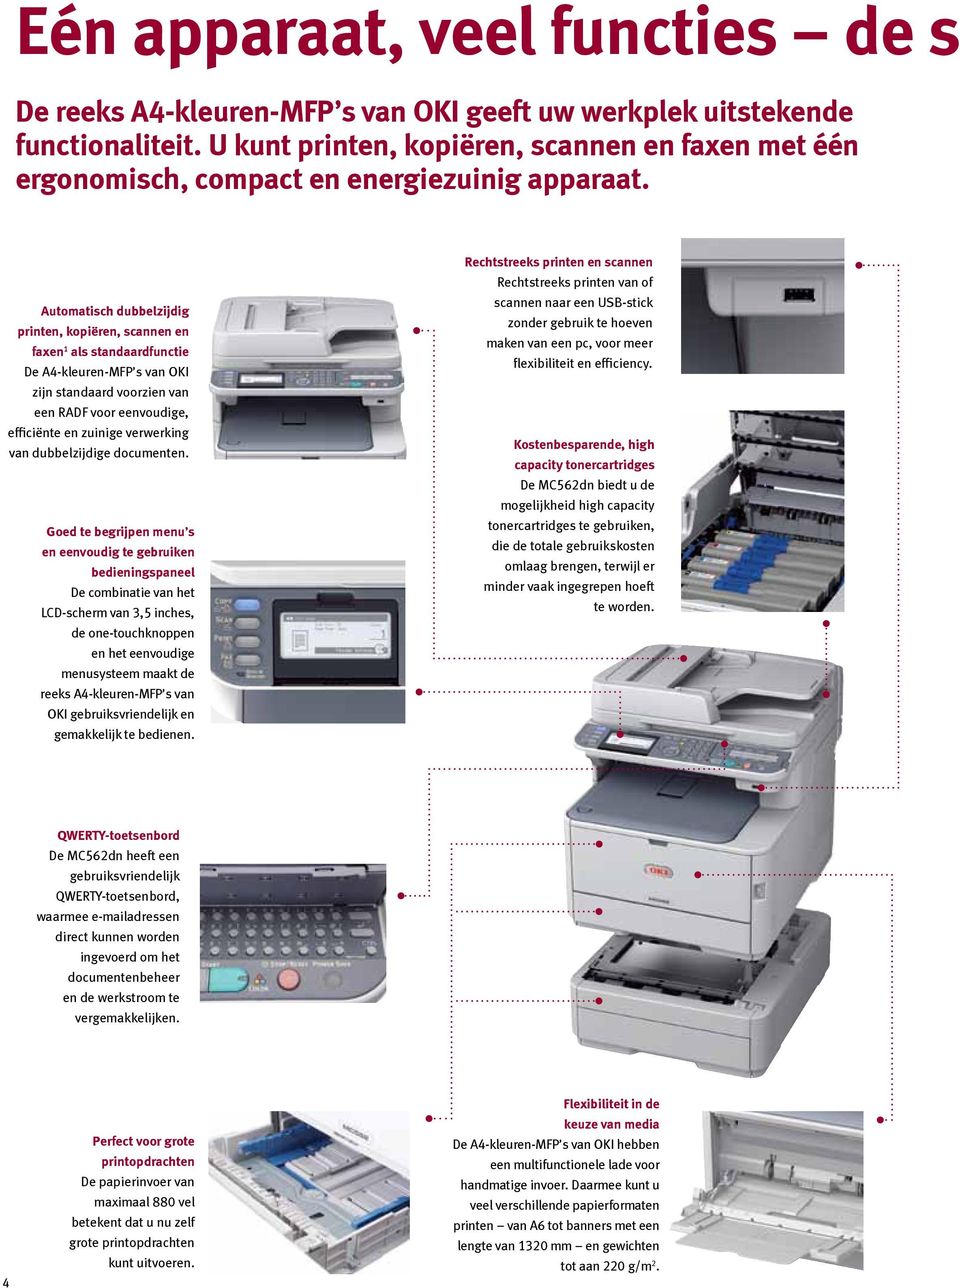 Automatisch dubbelzijdig printen, kopiëren, scannen en faxen 1 als standaardfunctie De A4-kleuren-MFP s van OKI zijn standaard voorzien van een RADF voor eenvoudige, efficiënte en zuinige verwerking